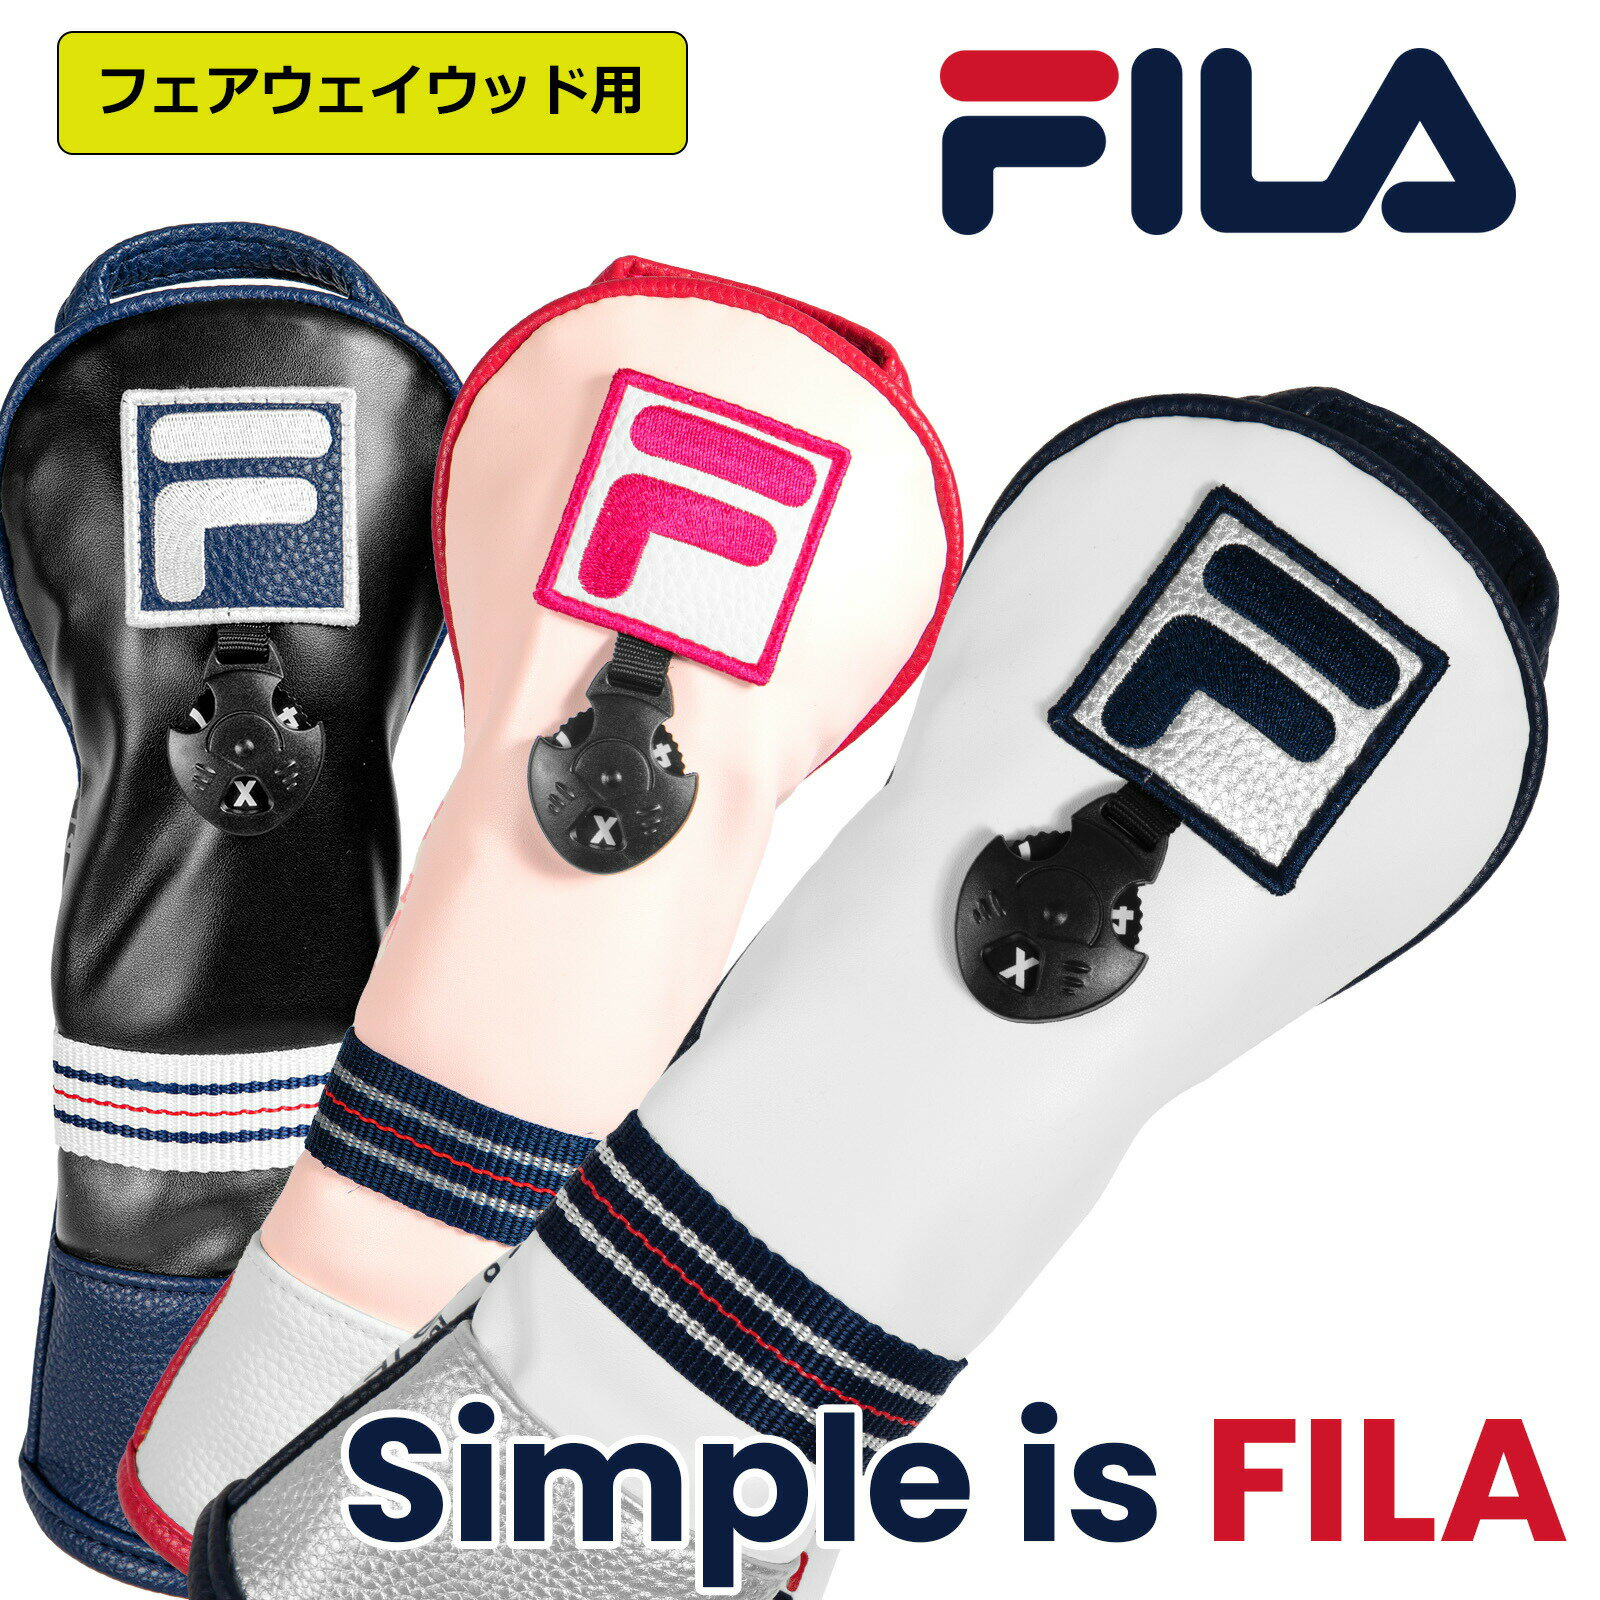 ゴルフ 有名ブランド FILA フェアウェイウッド用 クッション性のあるヘッドカバー メンズレディース兼用 もふもふのソフトな触り心地 ウッド ヘッド保護 シンプルなソックスタイプ かさ張らな…